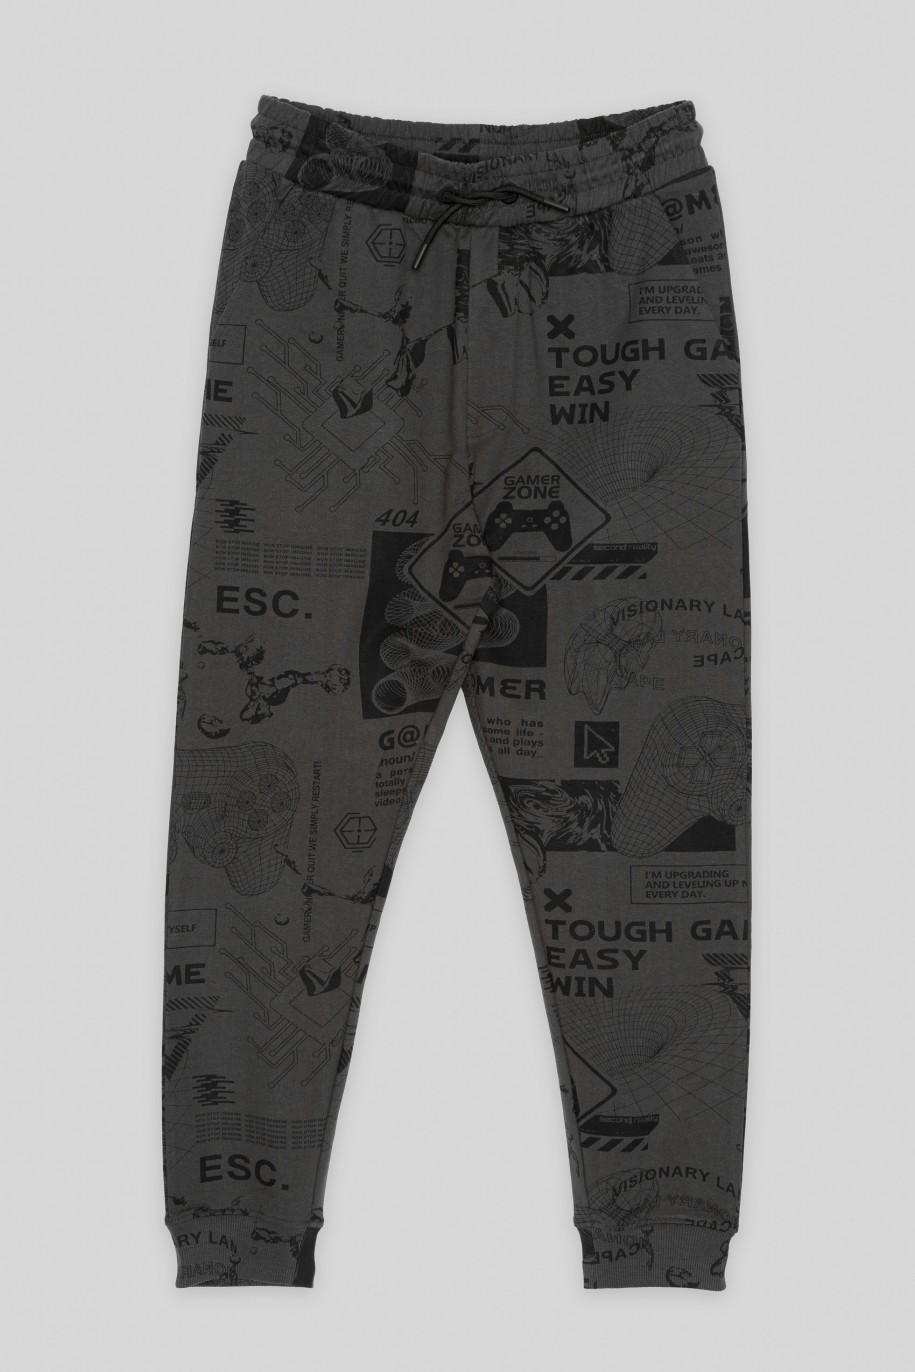 Szare spodnie dresowe dresowe z nadrukami na całości - 43528